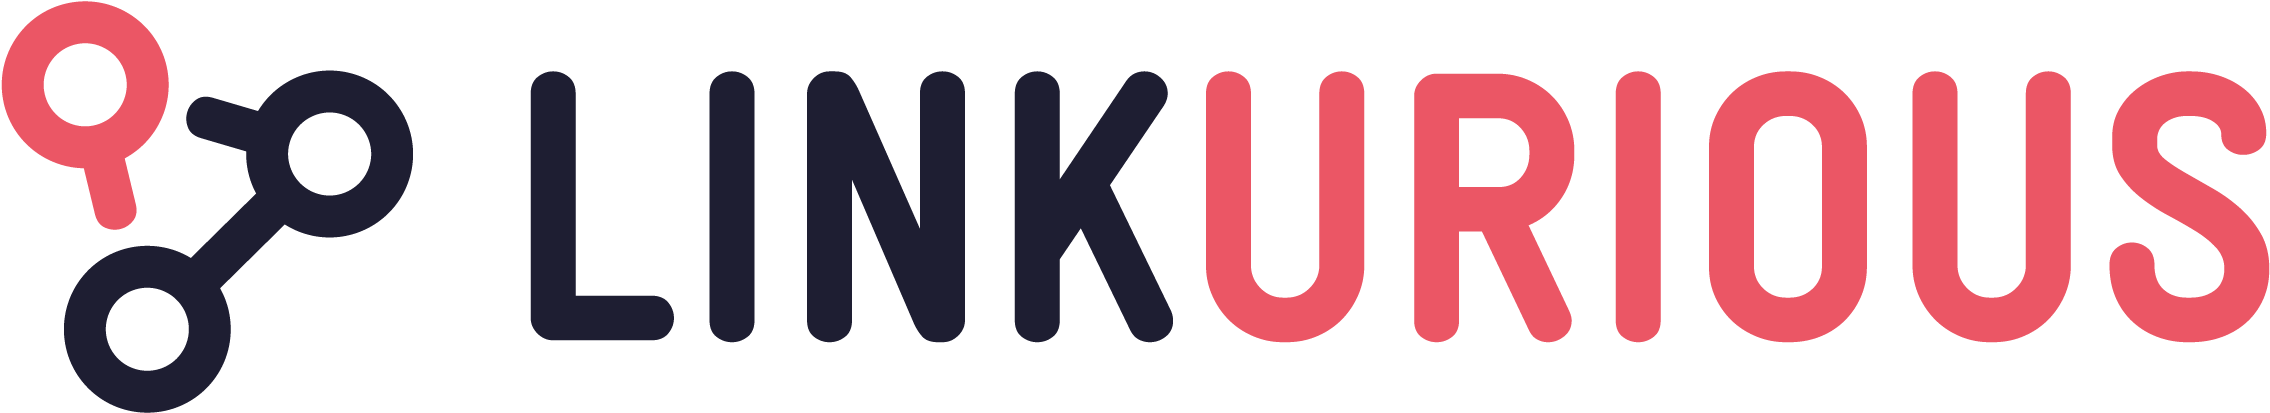 Linkurious Logo Large - Lembaga Kursus Clipart (2620x917), Png Download